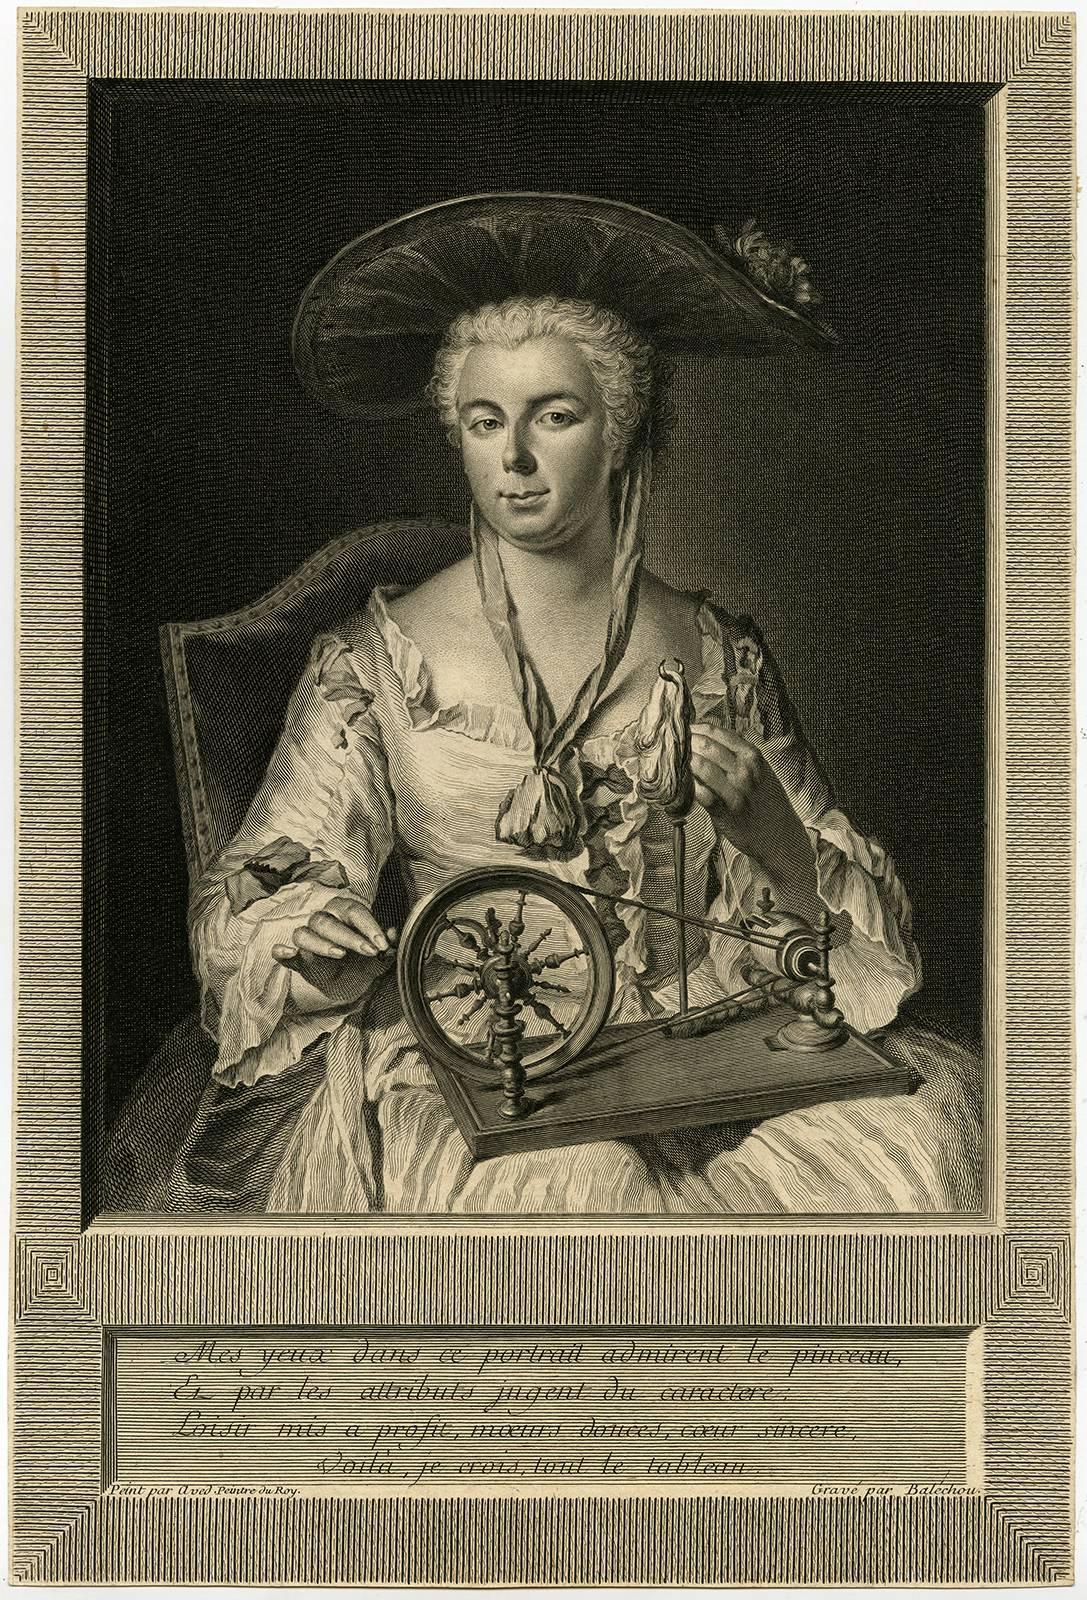 Jean-Joseph Balechou Portrait Print - Mes Yeux dans ce portrait admirent le pinceau, et par les attributs jugent [...]